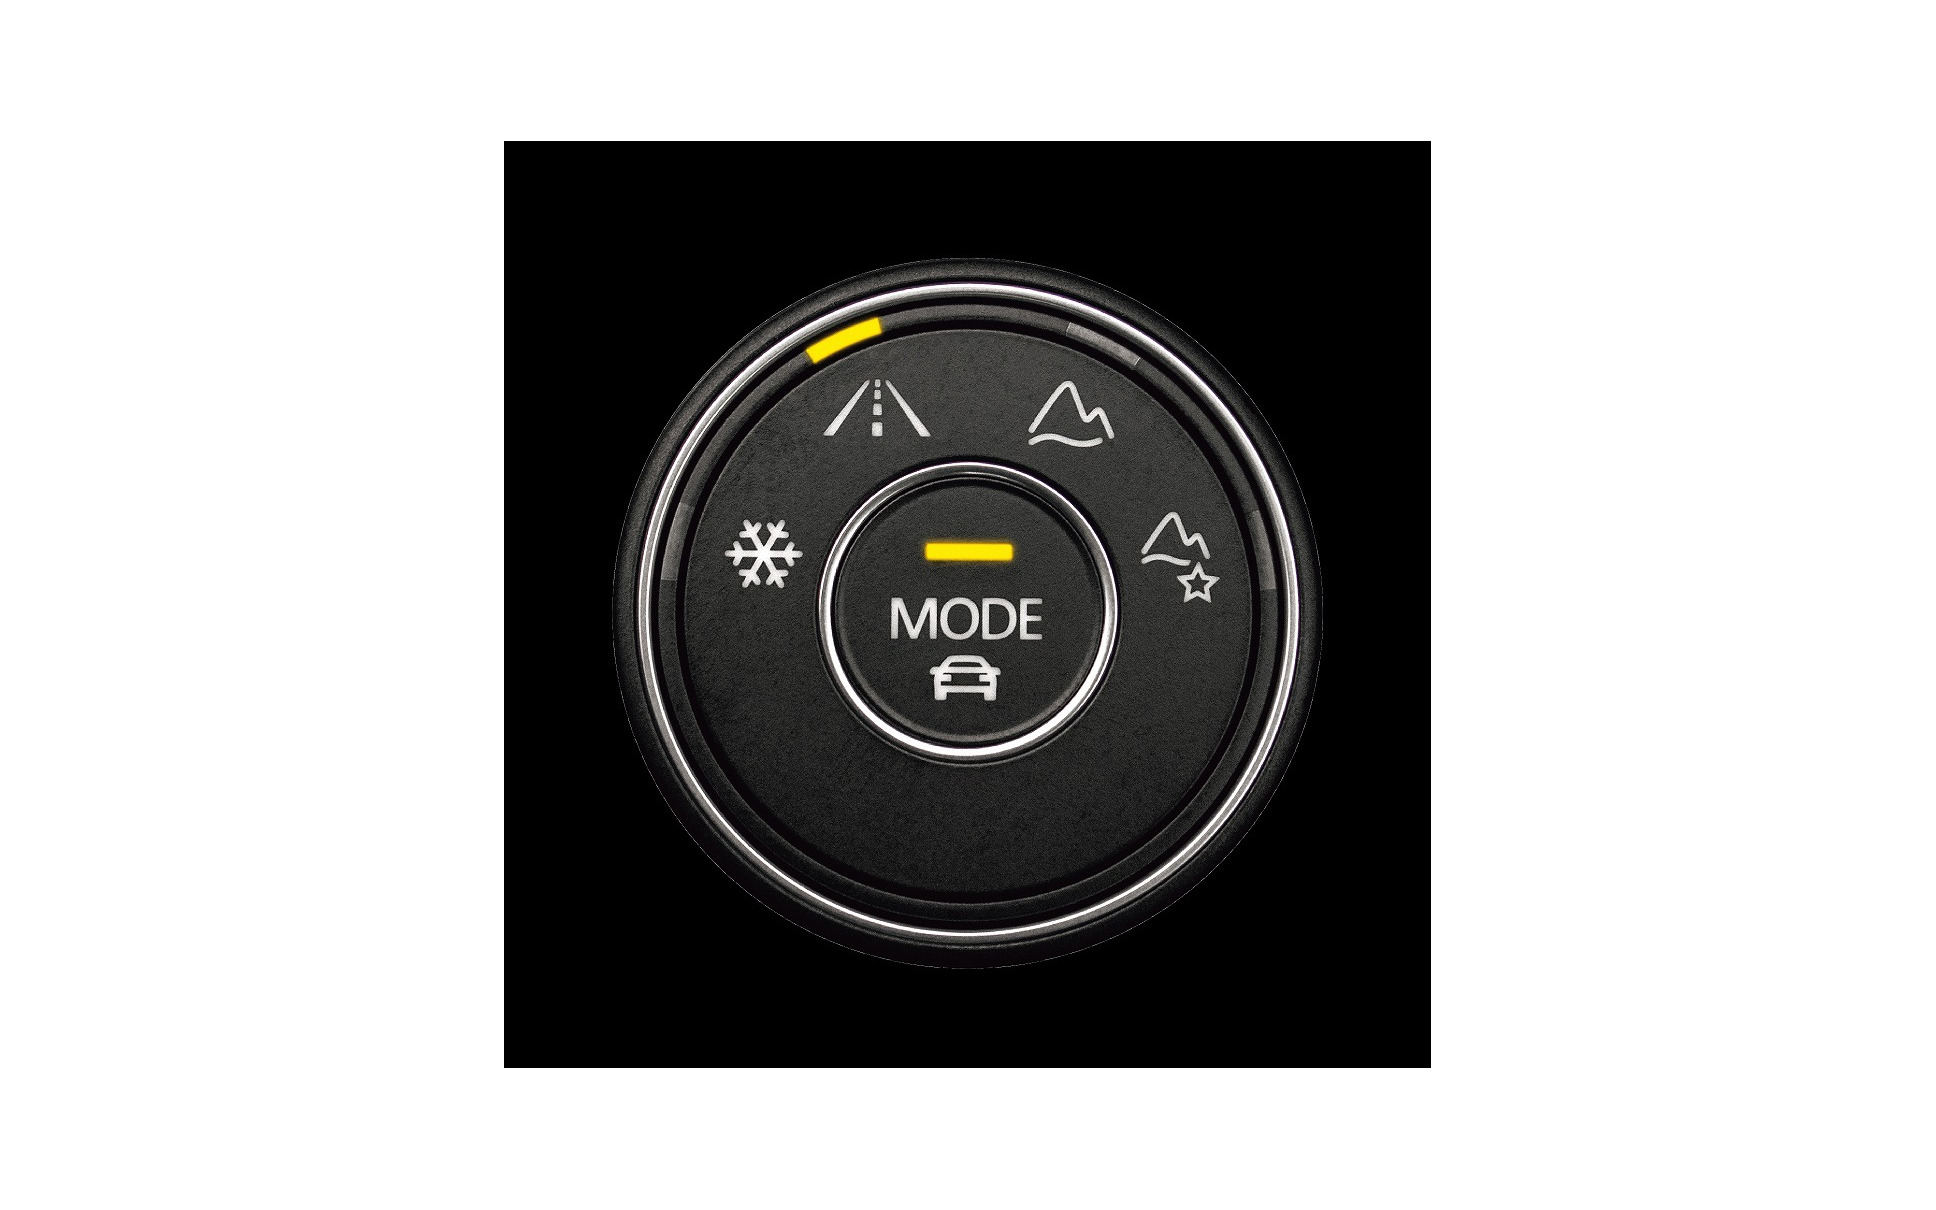 VW ティグアン 4MOTION アクティブコントロール